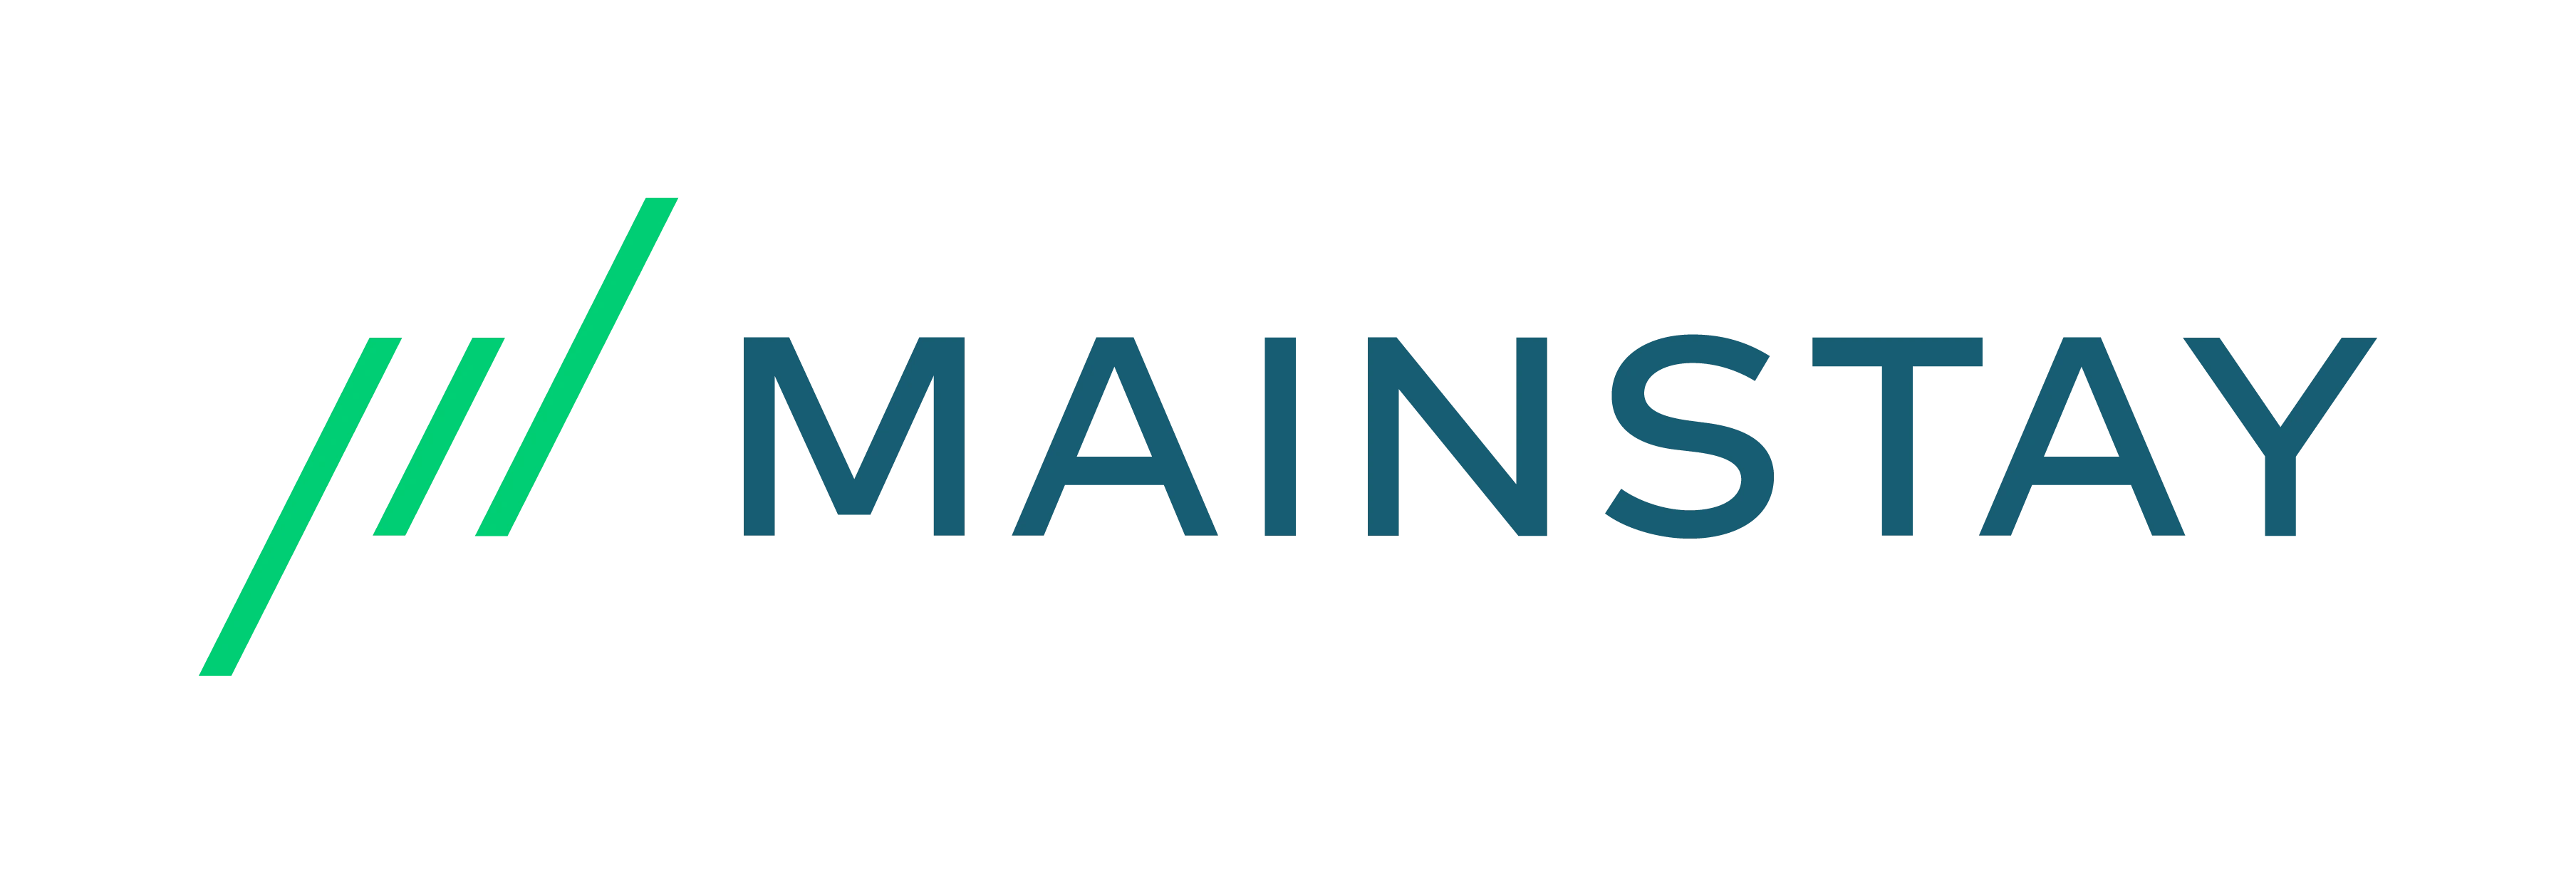 Mainstay Digital logo